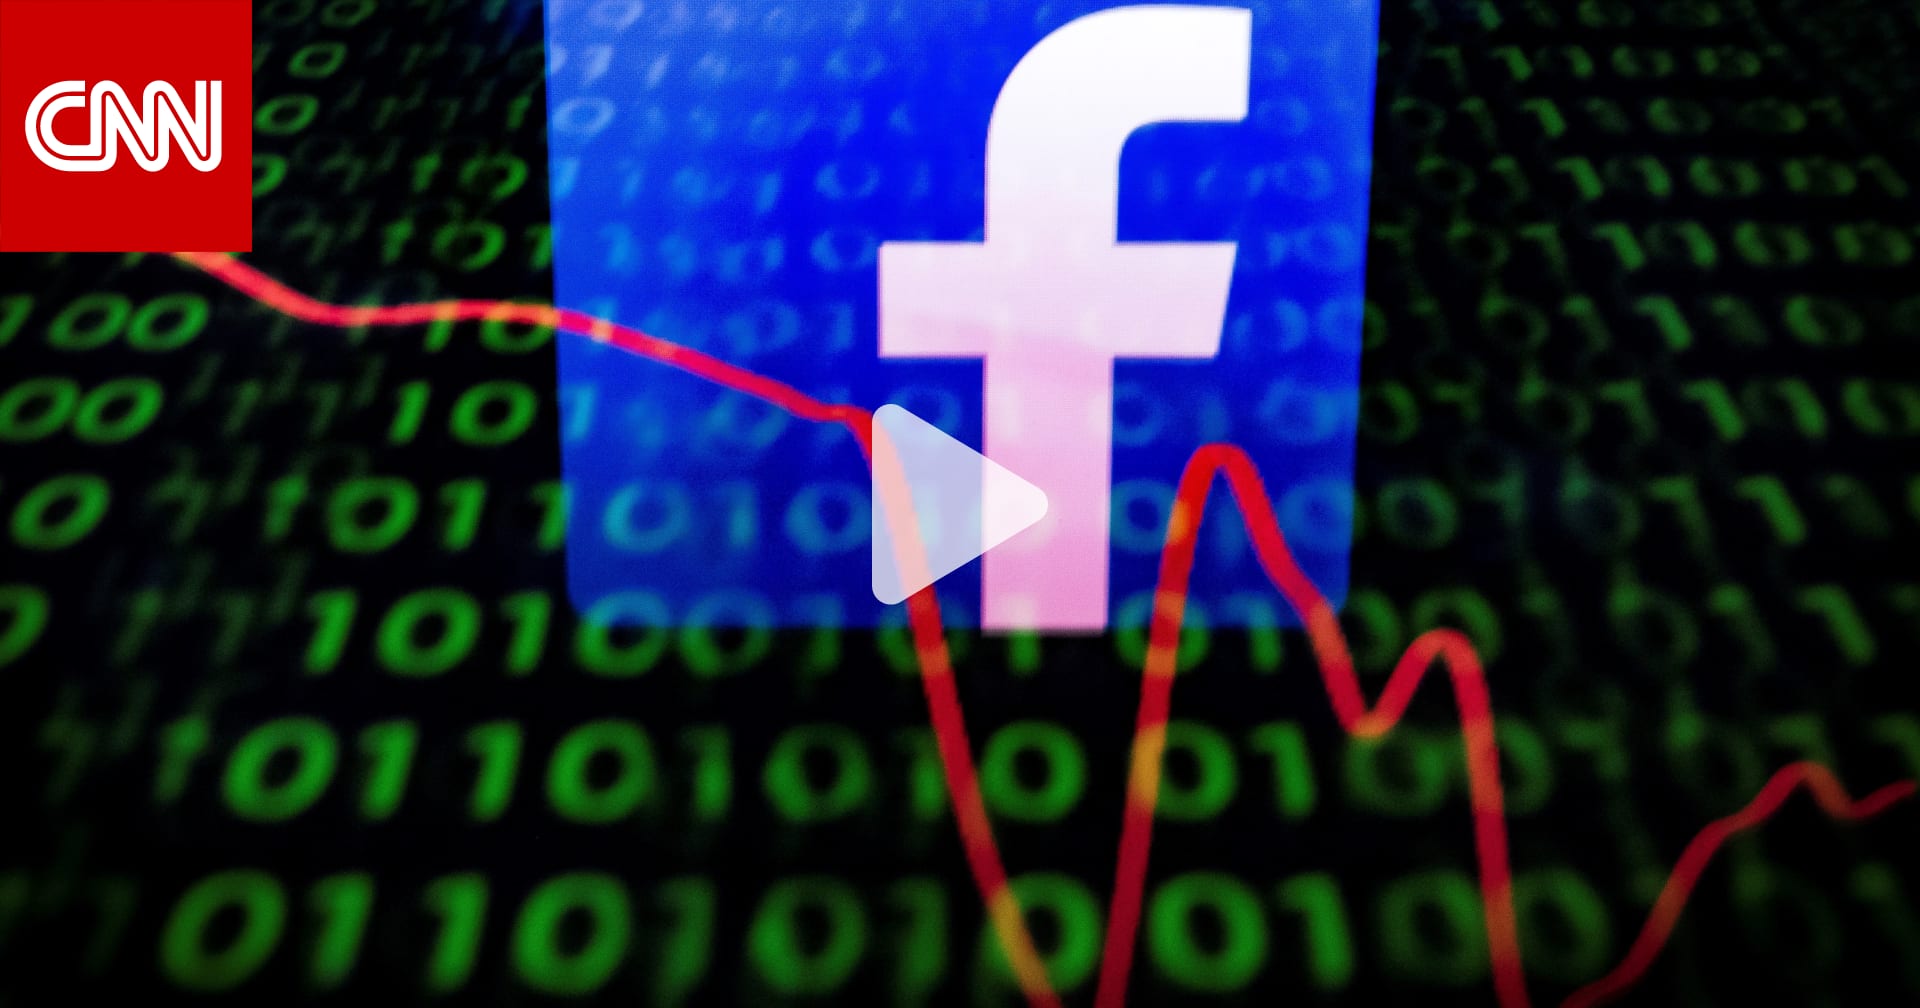 شاهد أسوأ يوم لفيسبوك وأكبر خسارة في تاريخ أسواق الأسهم Cnn Arabic